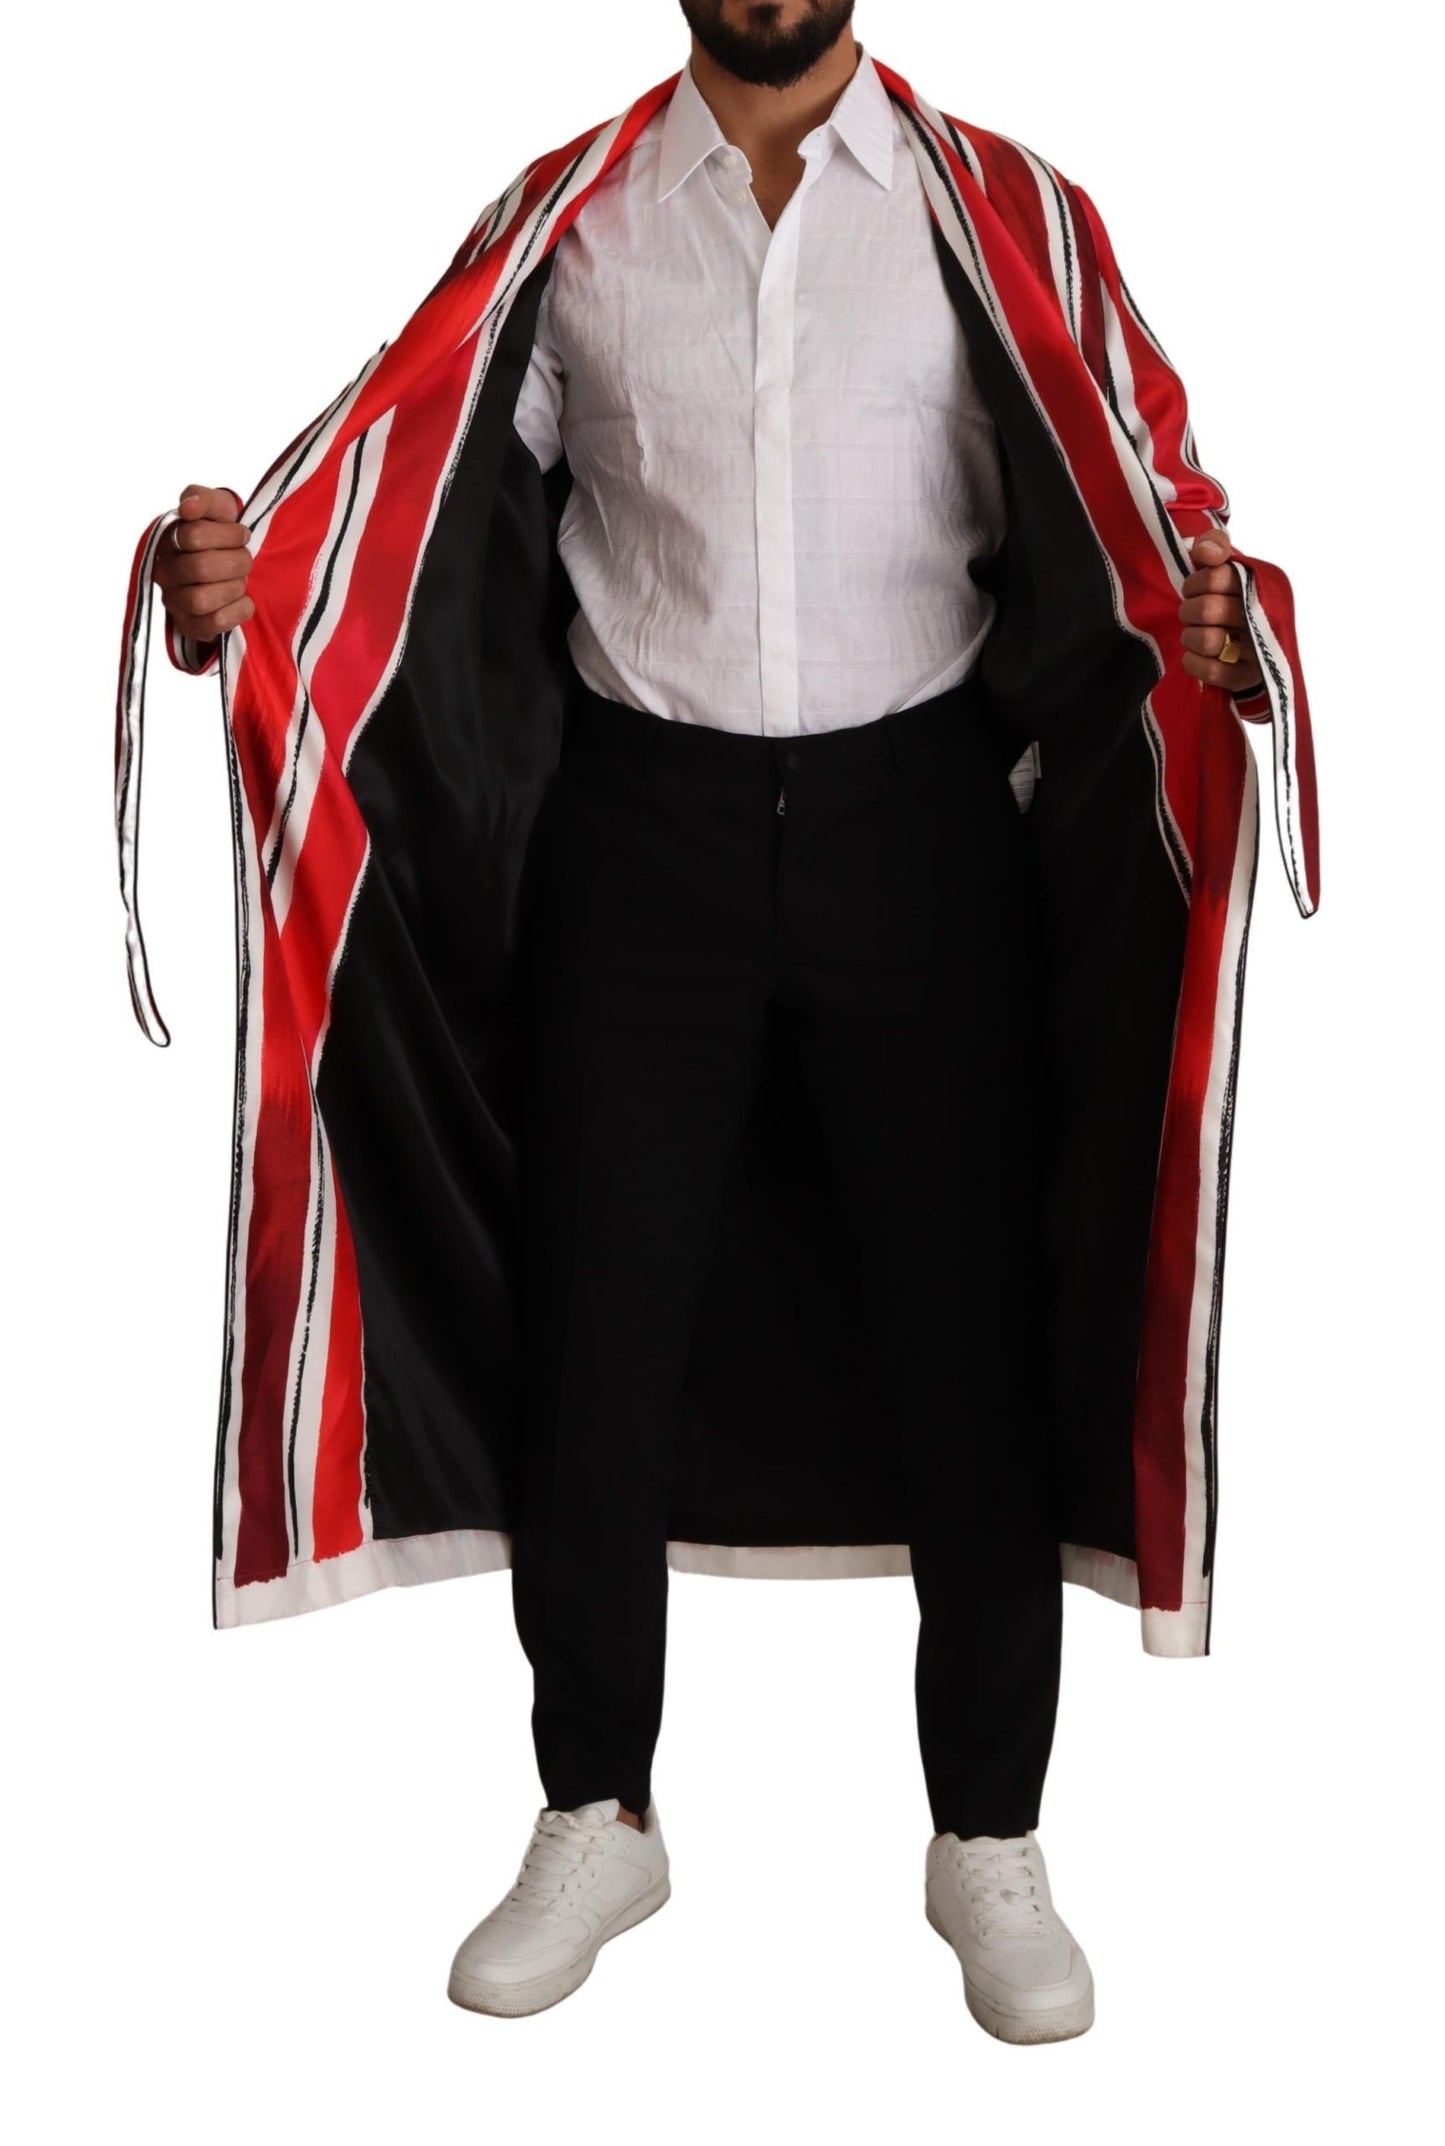 Dolce & Gabbana Red White Striped Silk Mens Abito da uomo